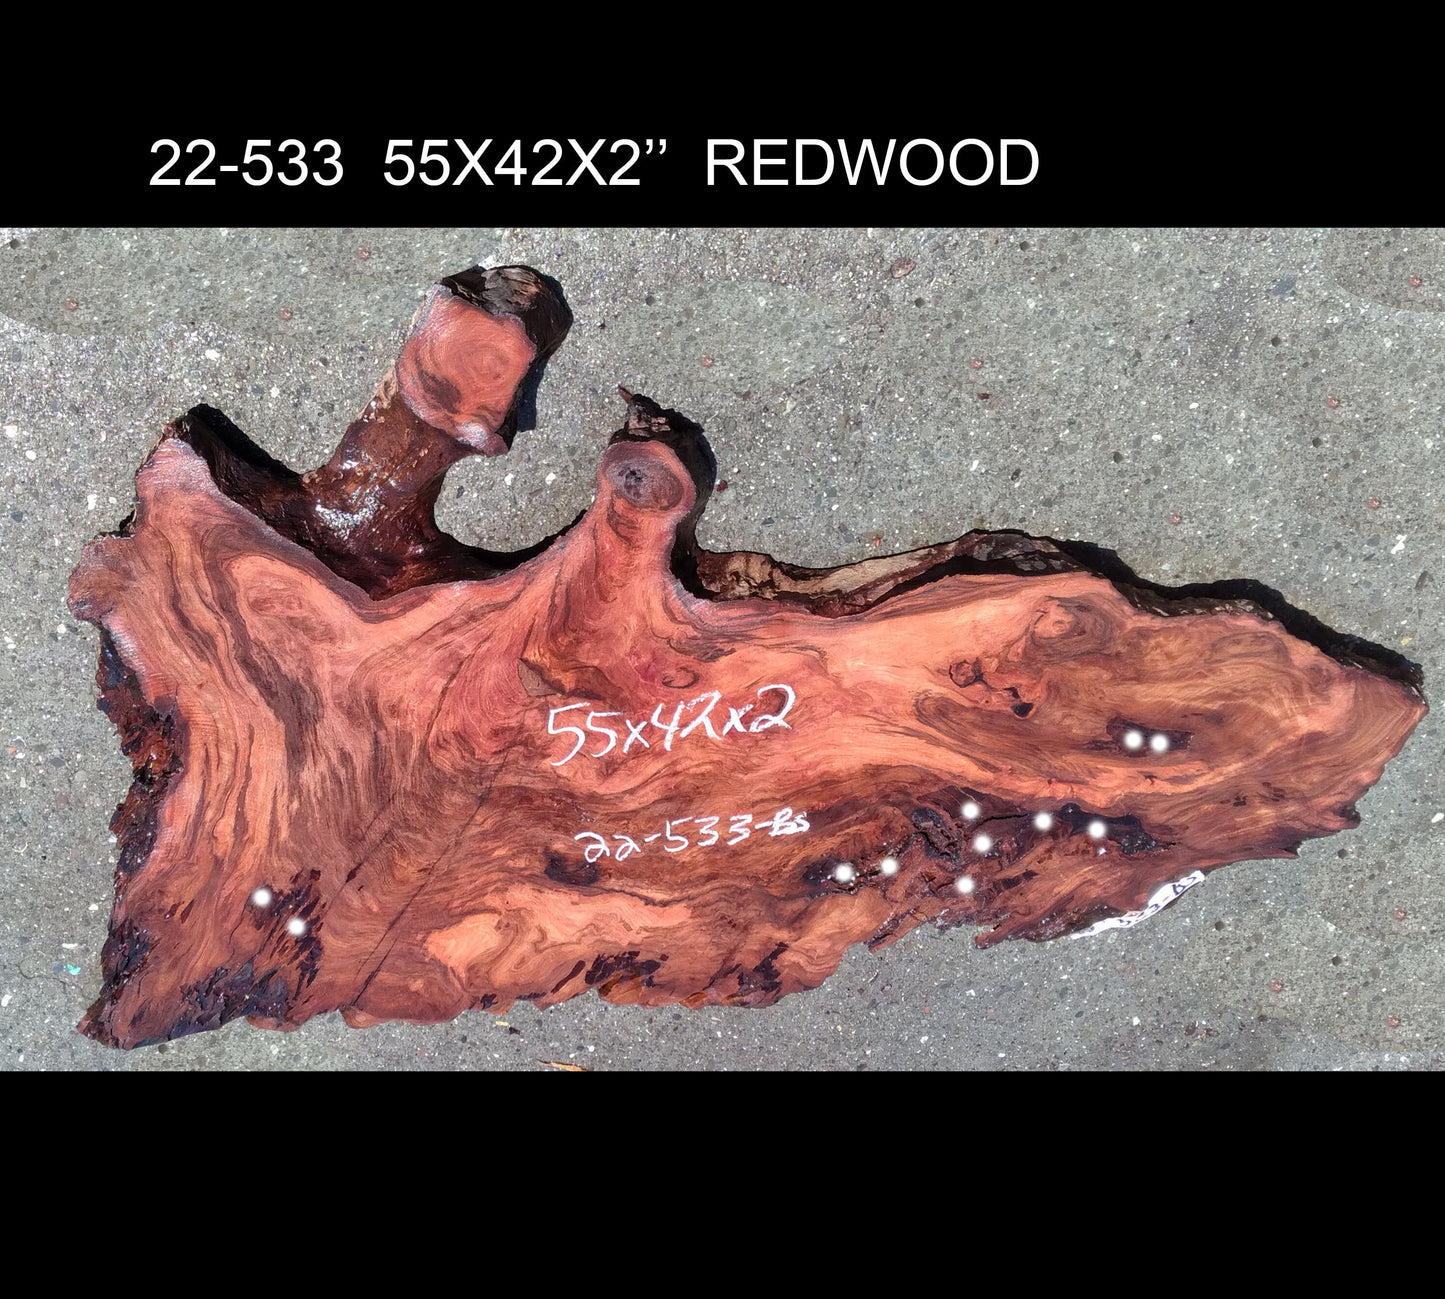 Live edge slab | redwood burl | river table | DIY crafts | 22-533